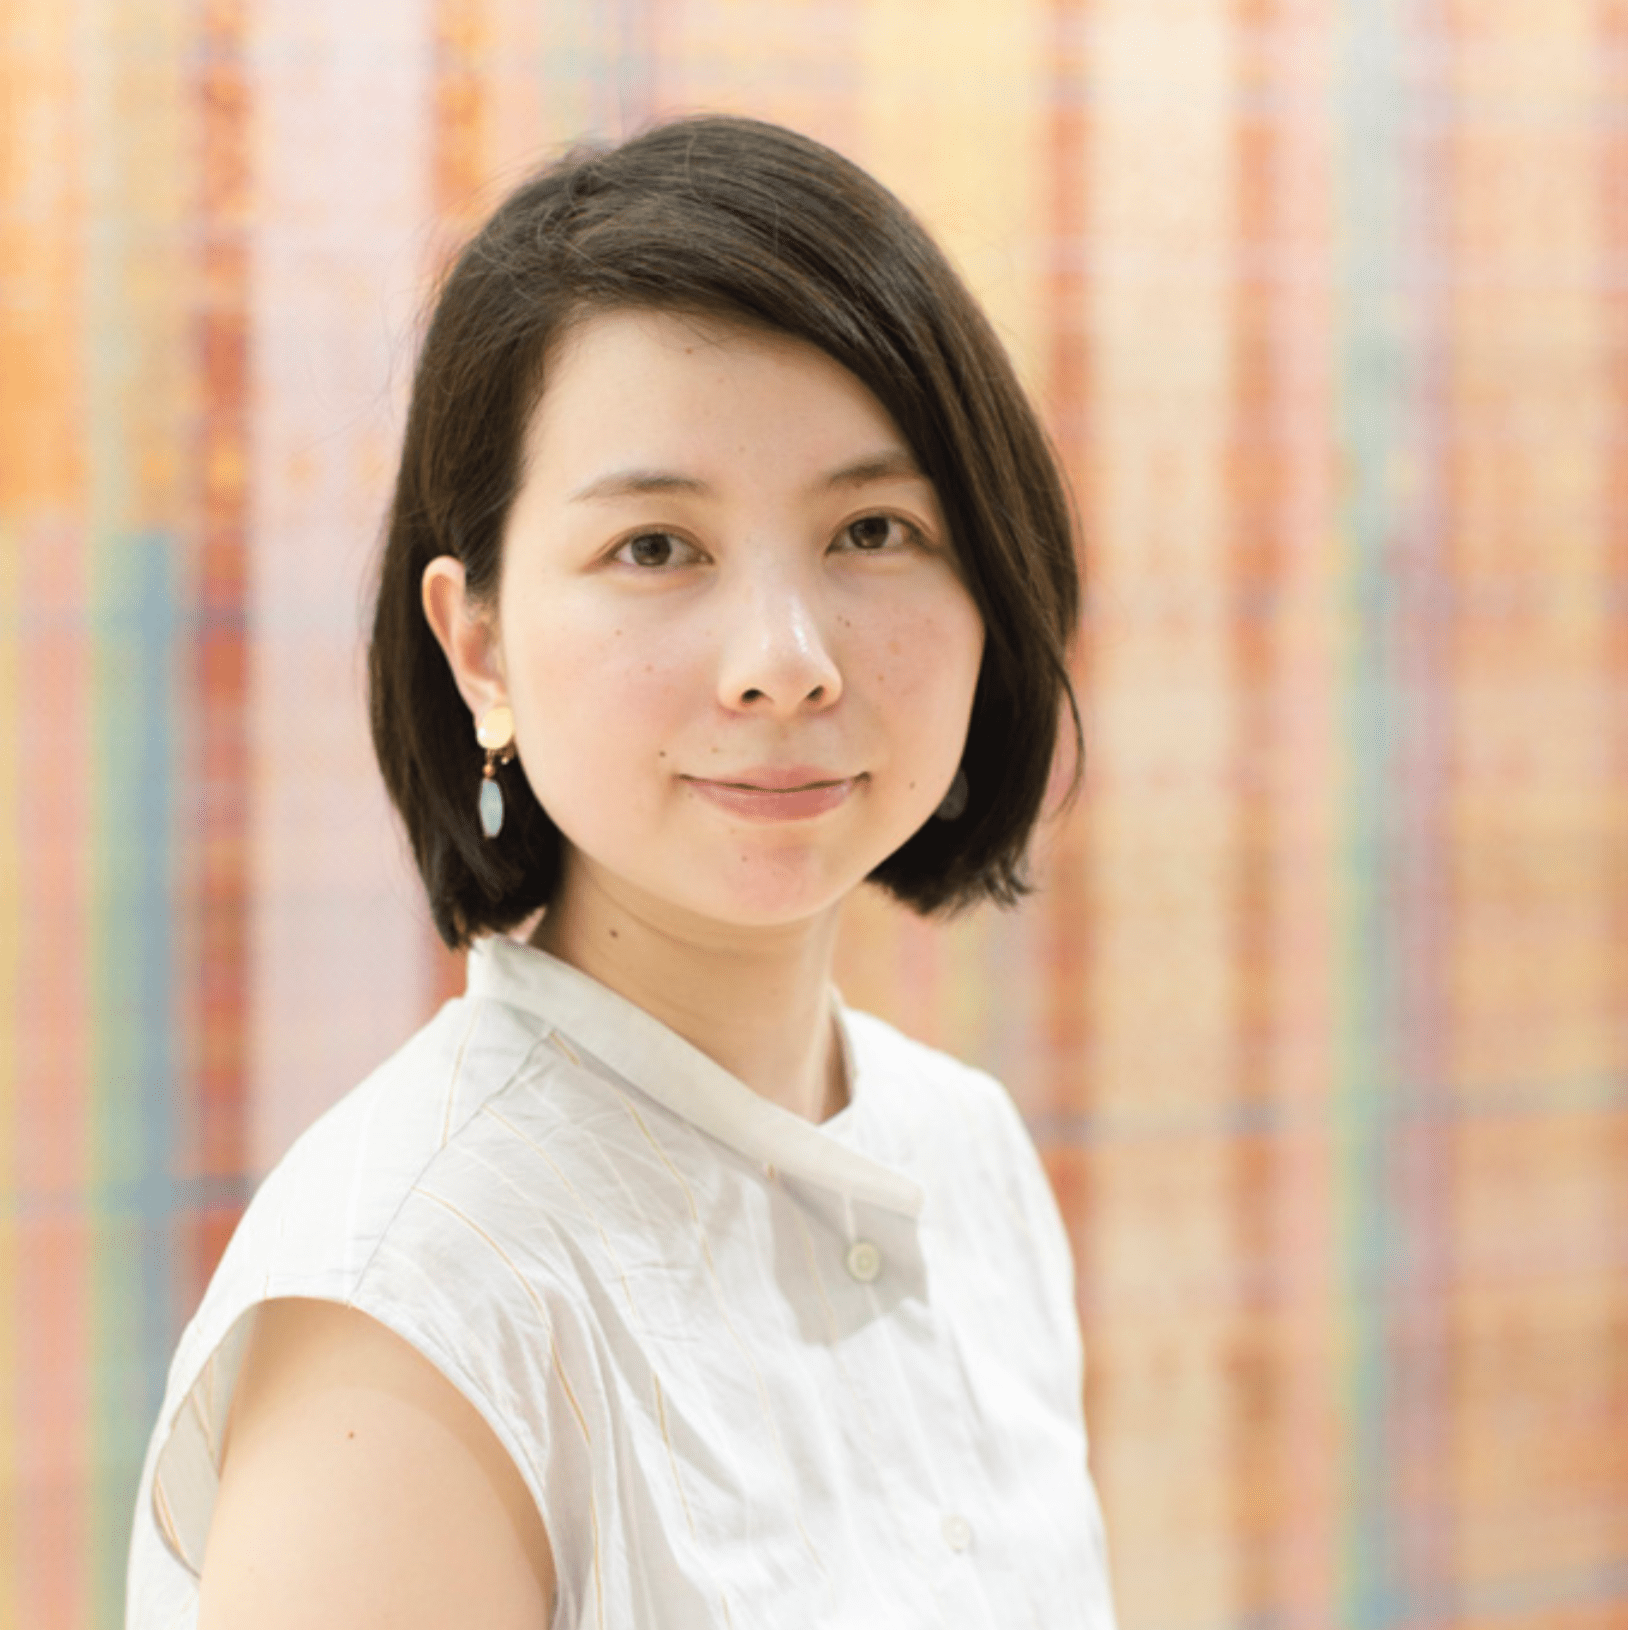 Portrait de l'artiste contemporaine japonaise Aya Kawato